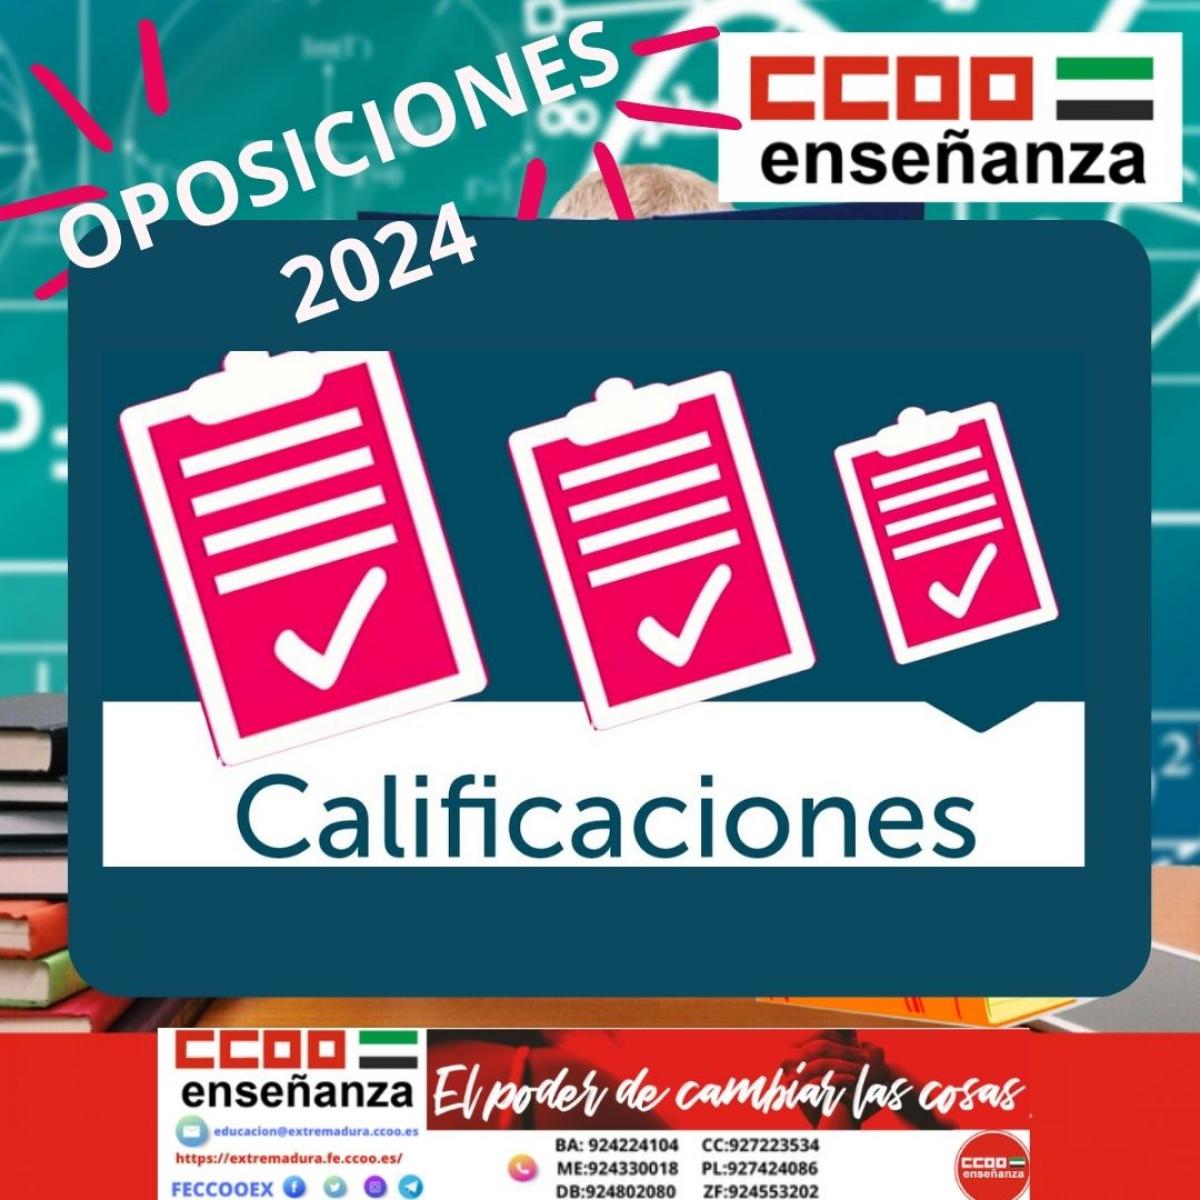 Calificaciones oposciones 2024